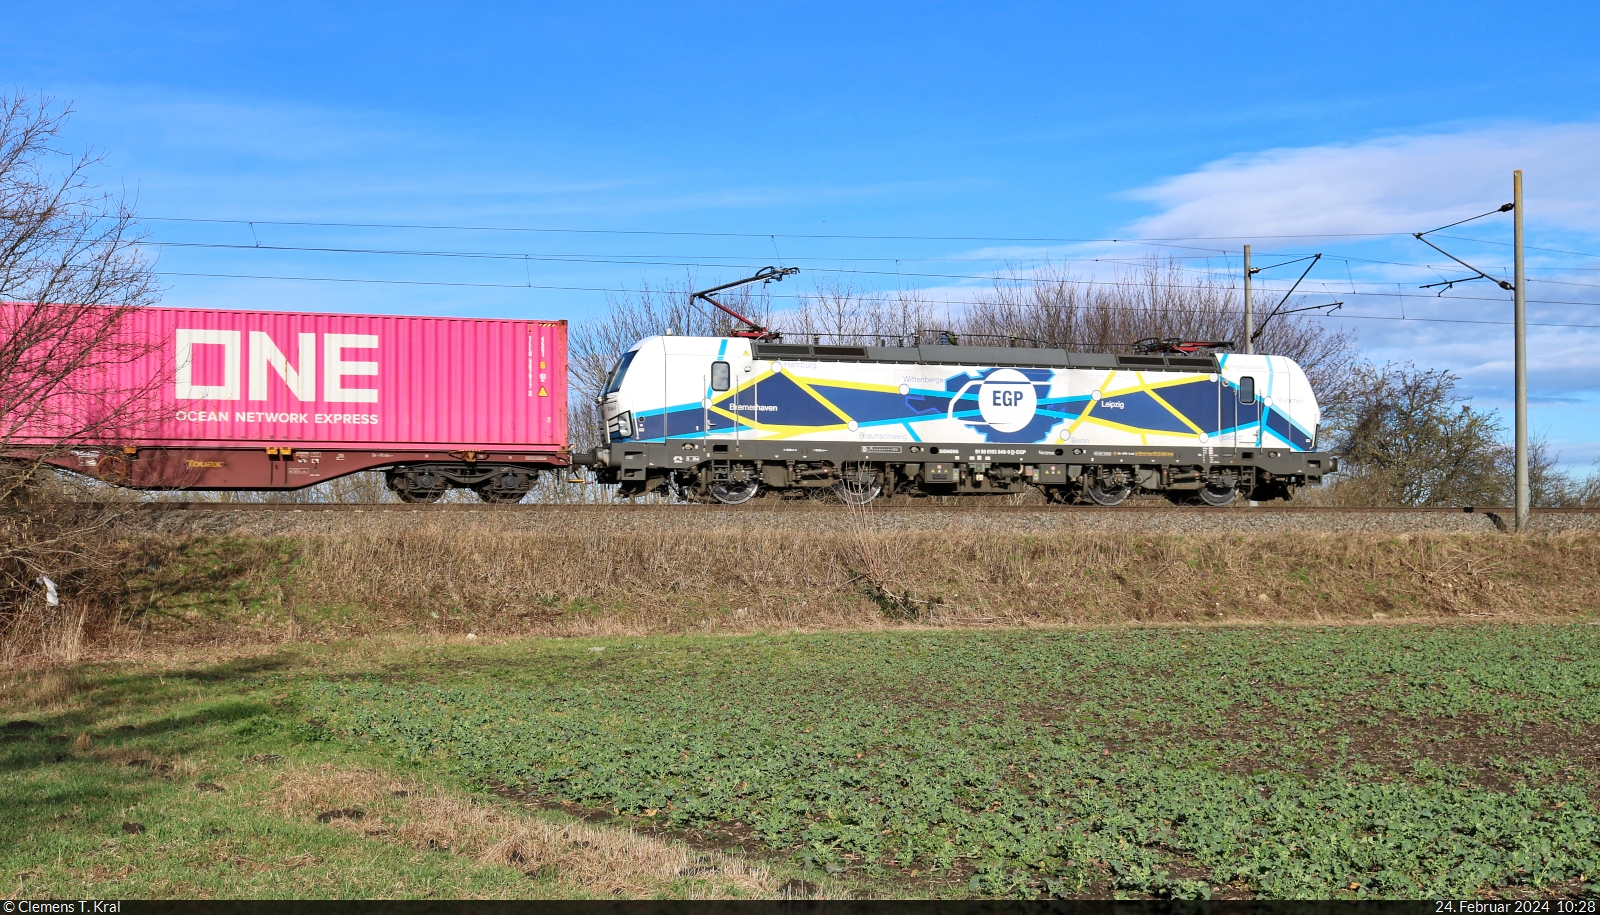 193 848-9 (Siemens Vectron) zieht bunte Kisten östlich von Zöberitz Richtung Köthen.

🧰 ENON Gesellschaft mbH & Co. KG, eingesetzt bei der Eisenbahngesellschaft Potsdam mbH (EGP)
🕓 24.2.2024 | 10:28 Uhr